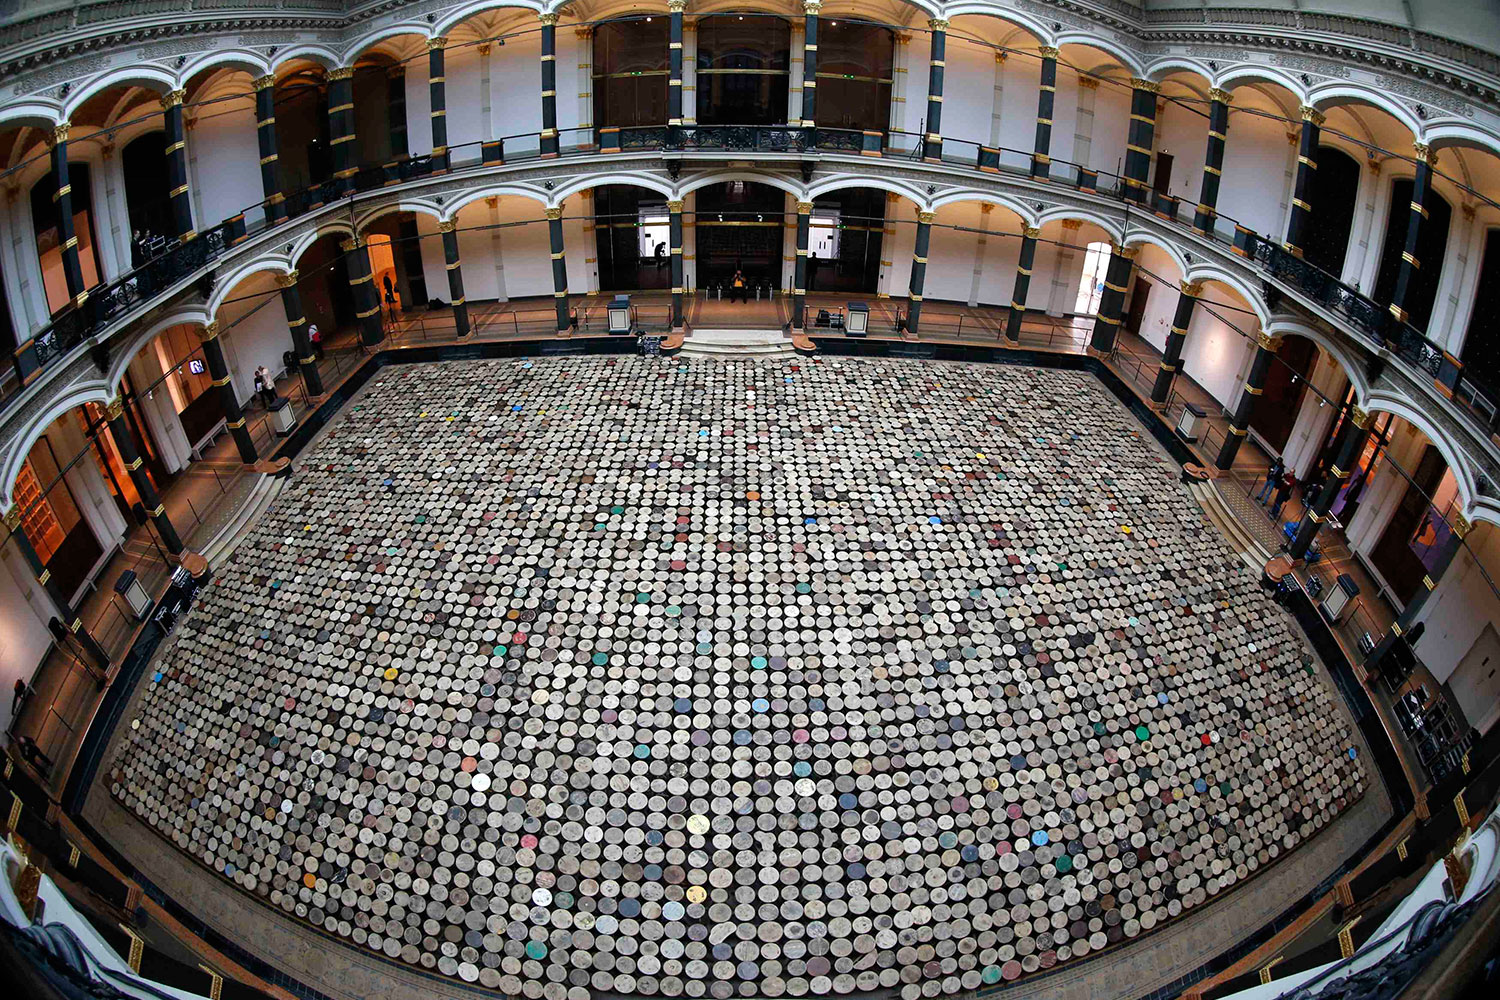 La exposición "Evidende" del artista chino Ai Weiwei llegará a Berlín el próximo mes de abril